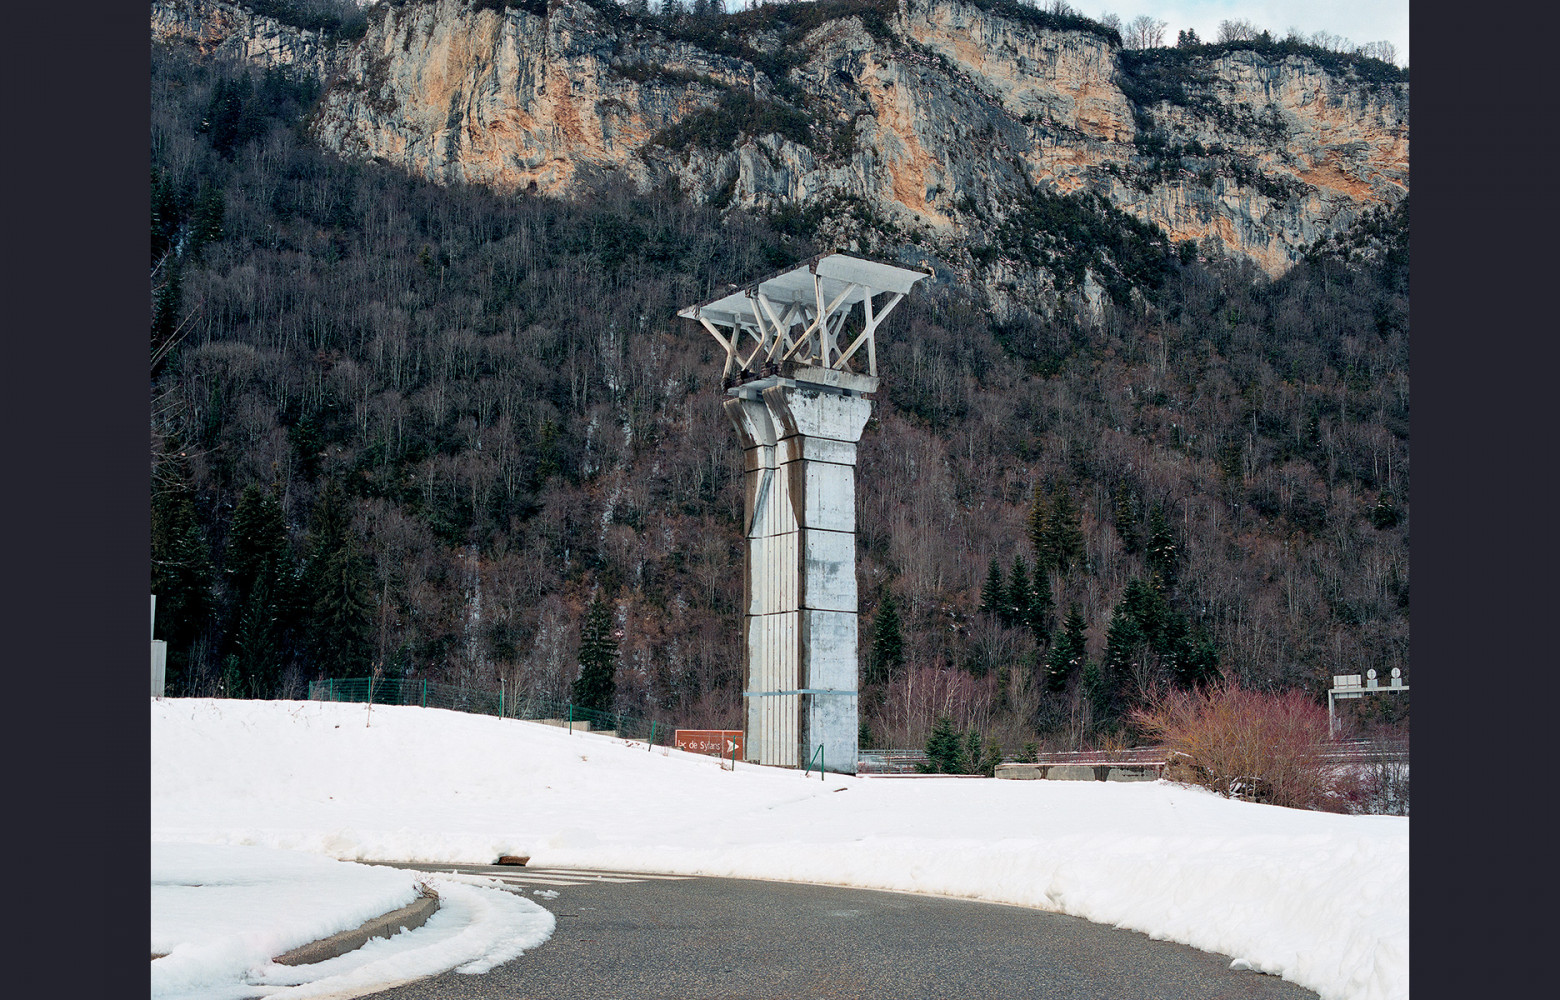 Bogumil Serafin, « Le Signal de Sylans » (1989). A40, point kilométrique 116.